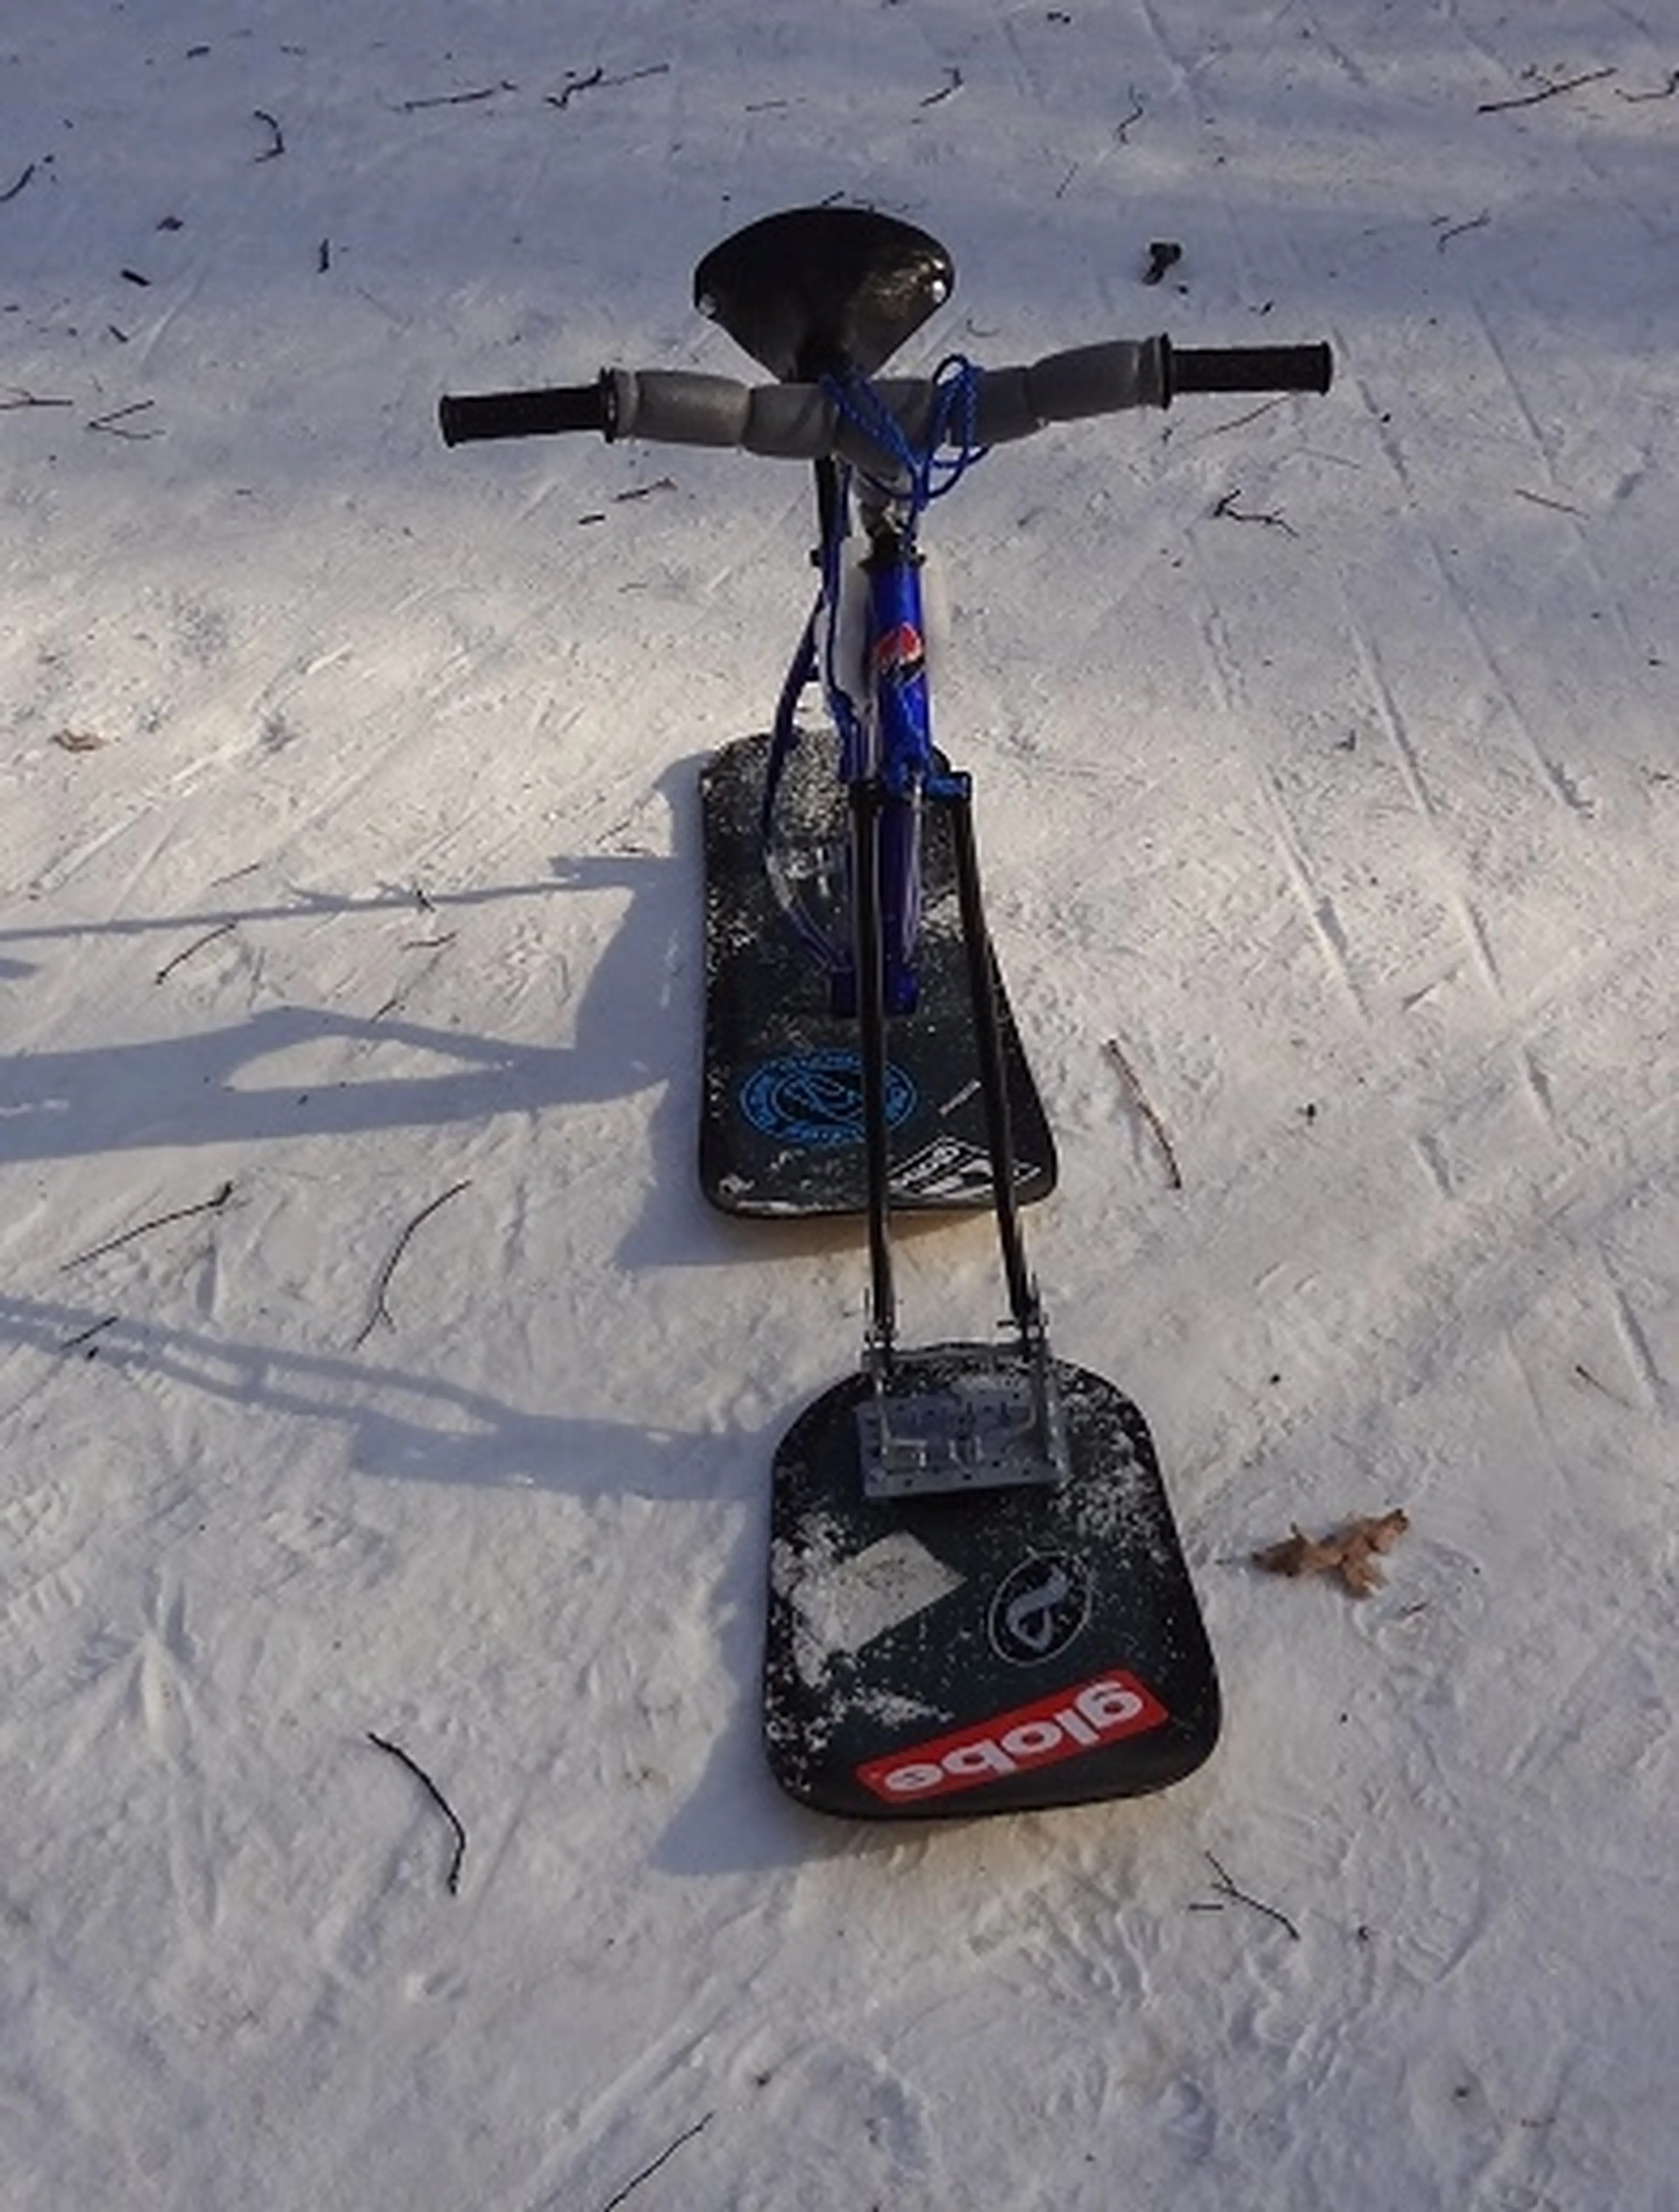 2. Snow bike